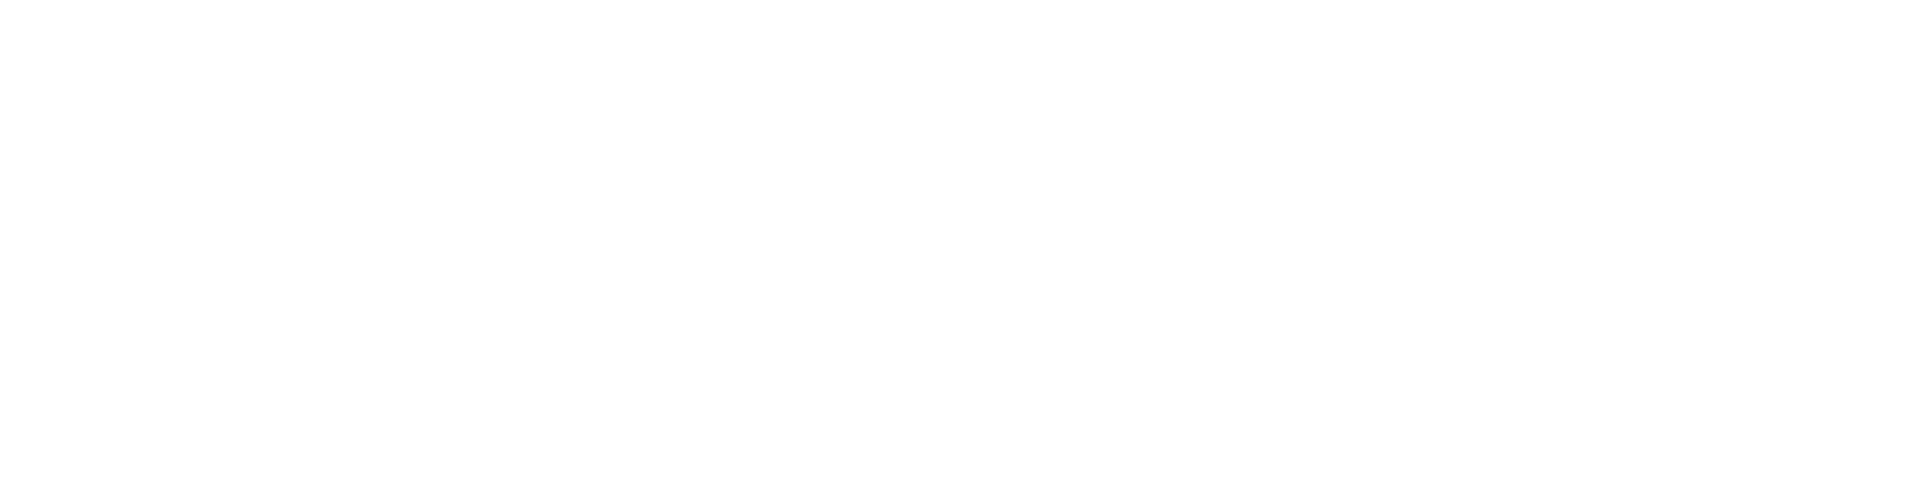 Brand - SXSW